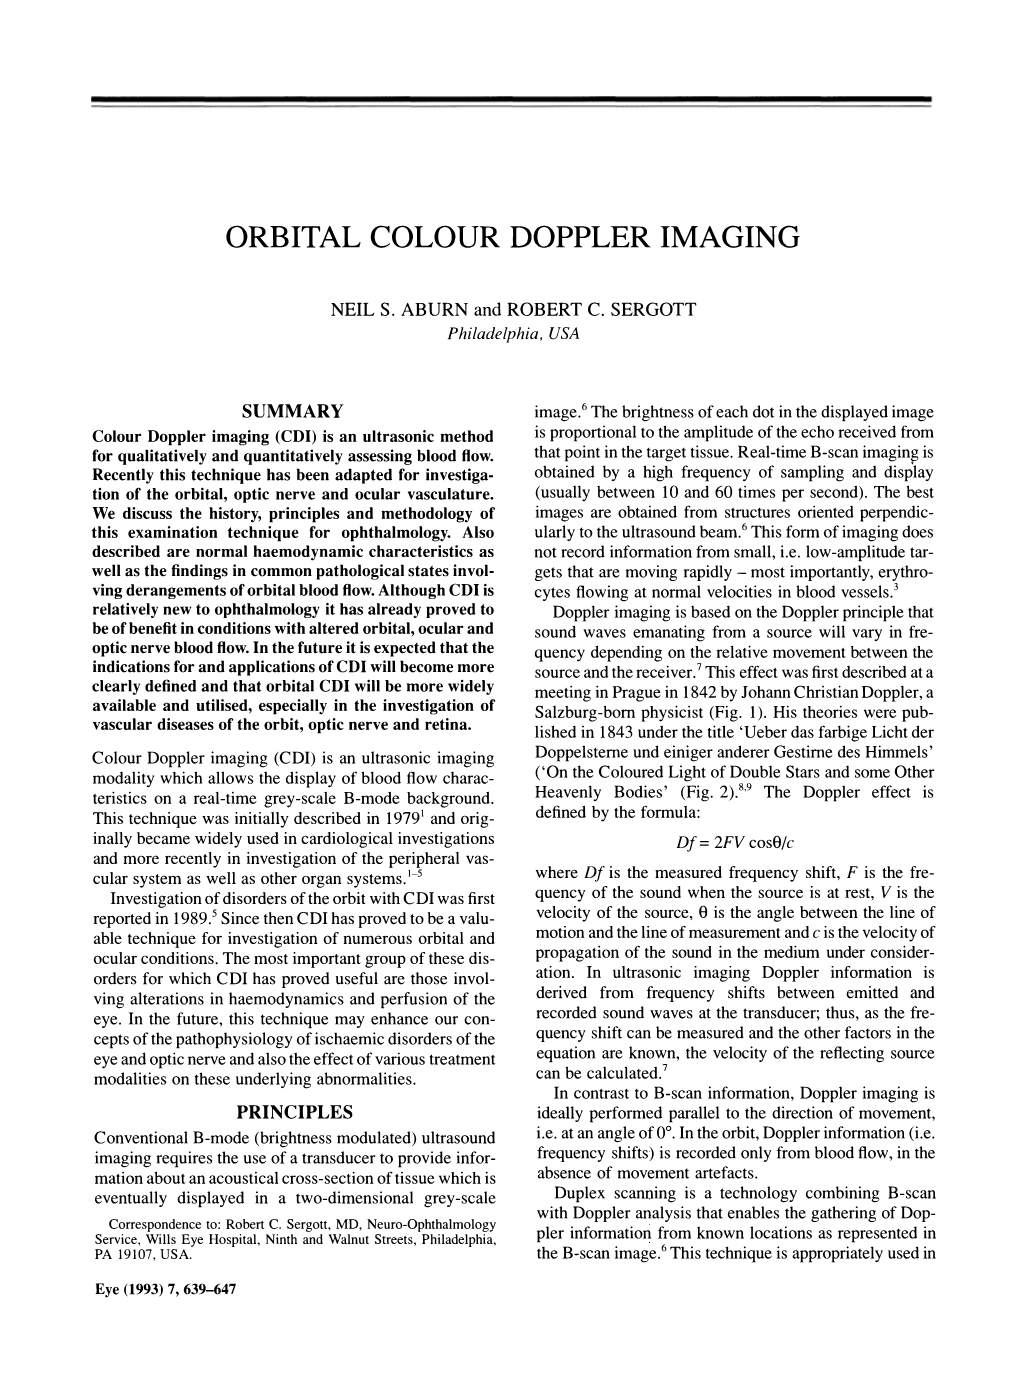 Orbital Colour Doppler Imaging